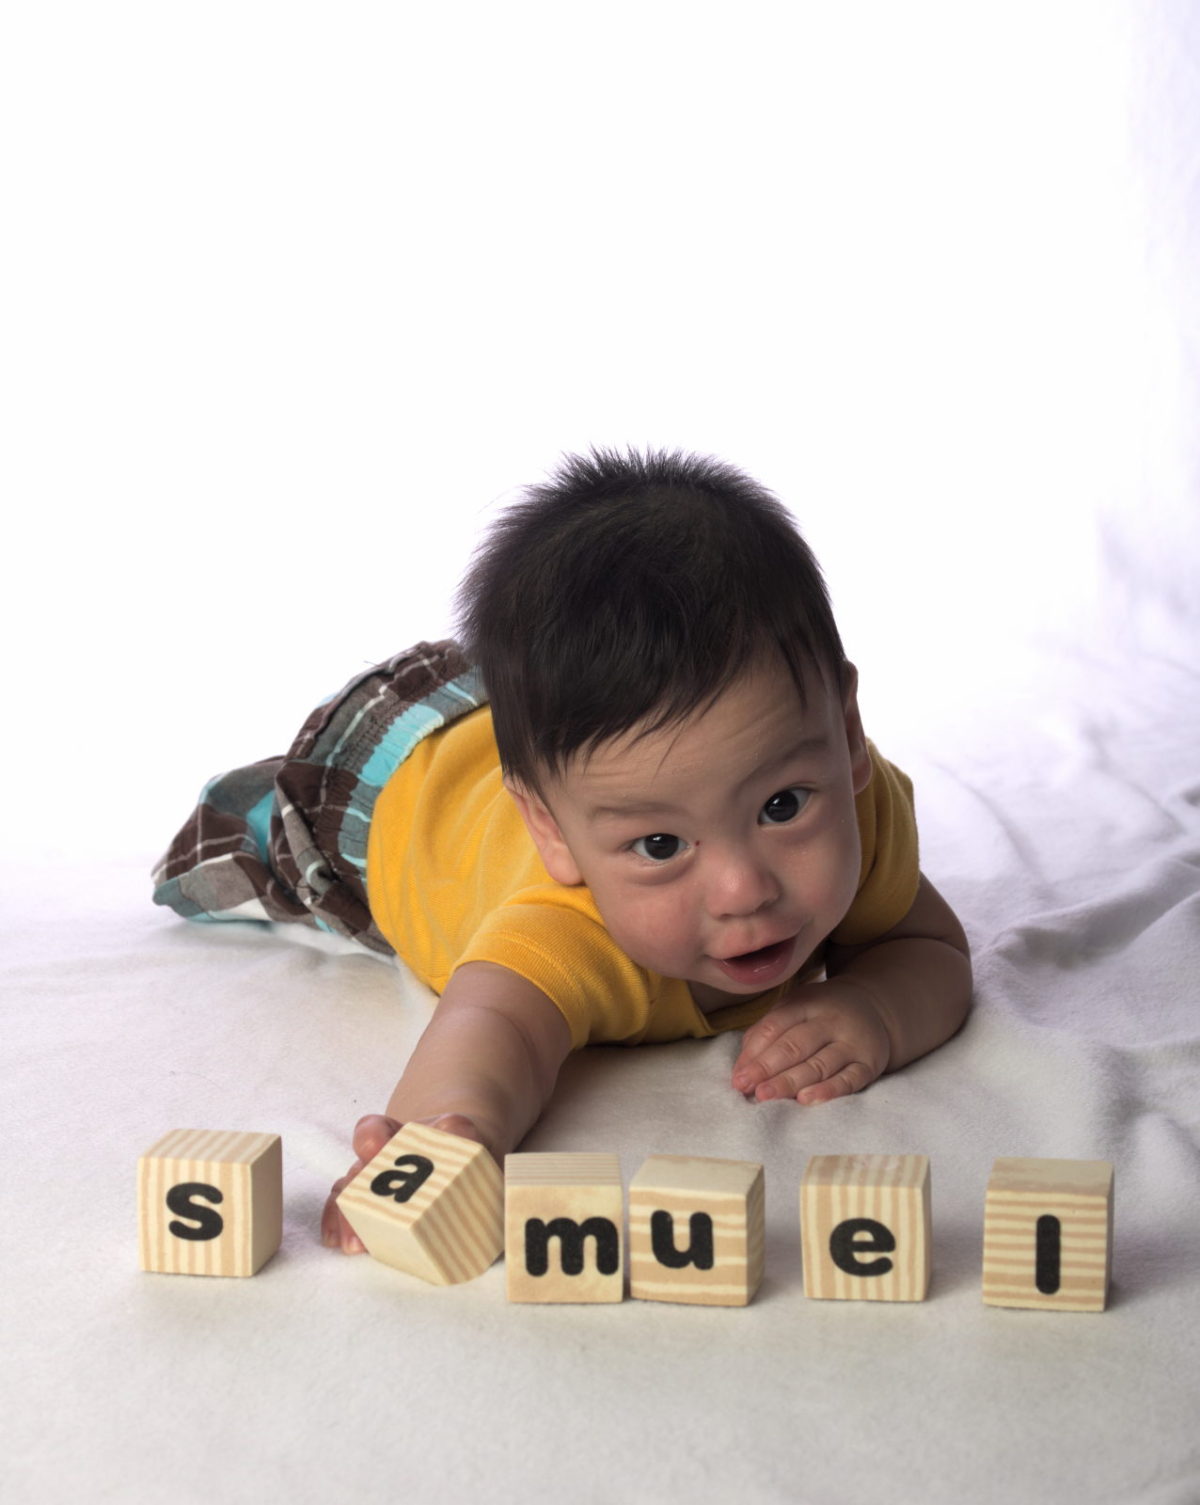 Spell “Samuel”